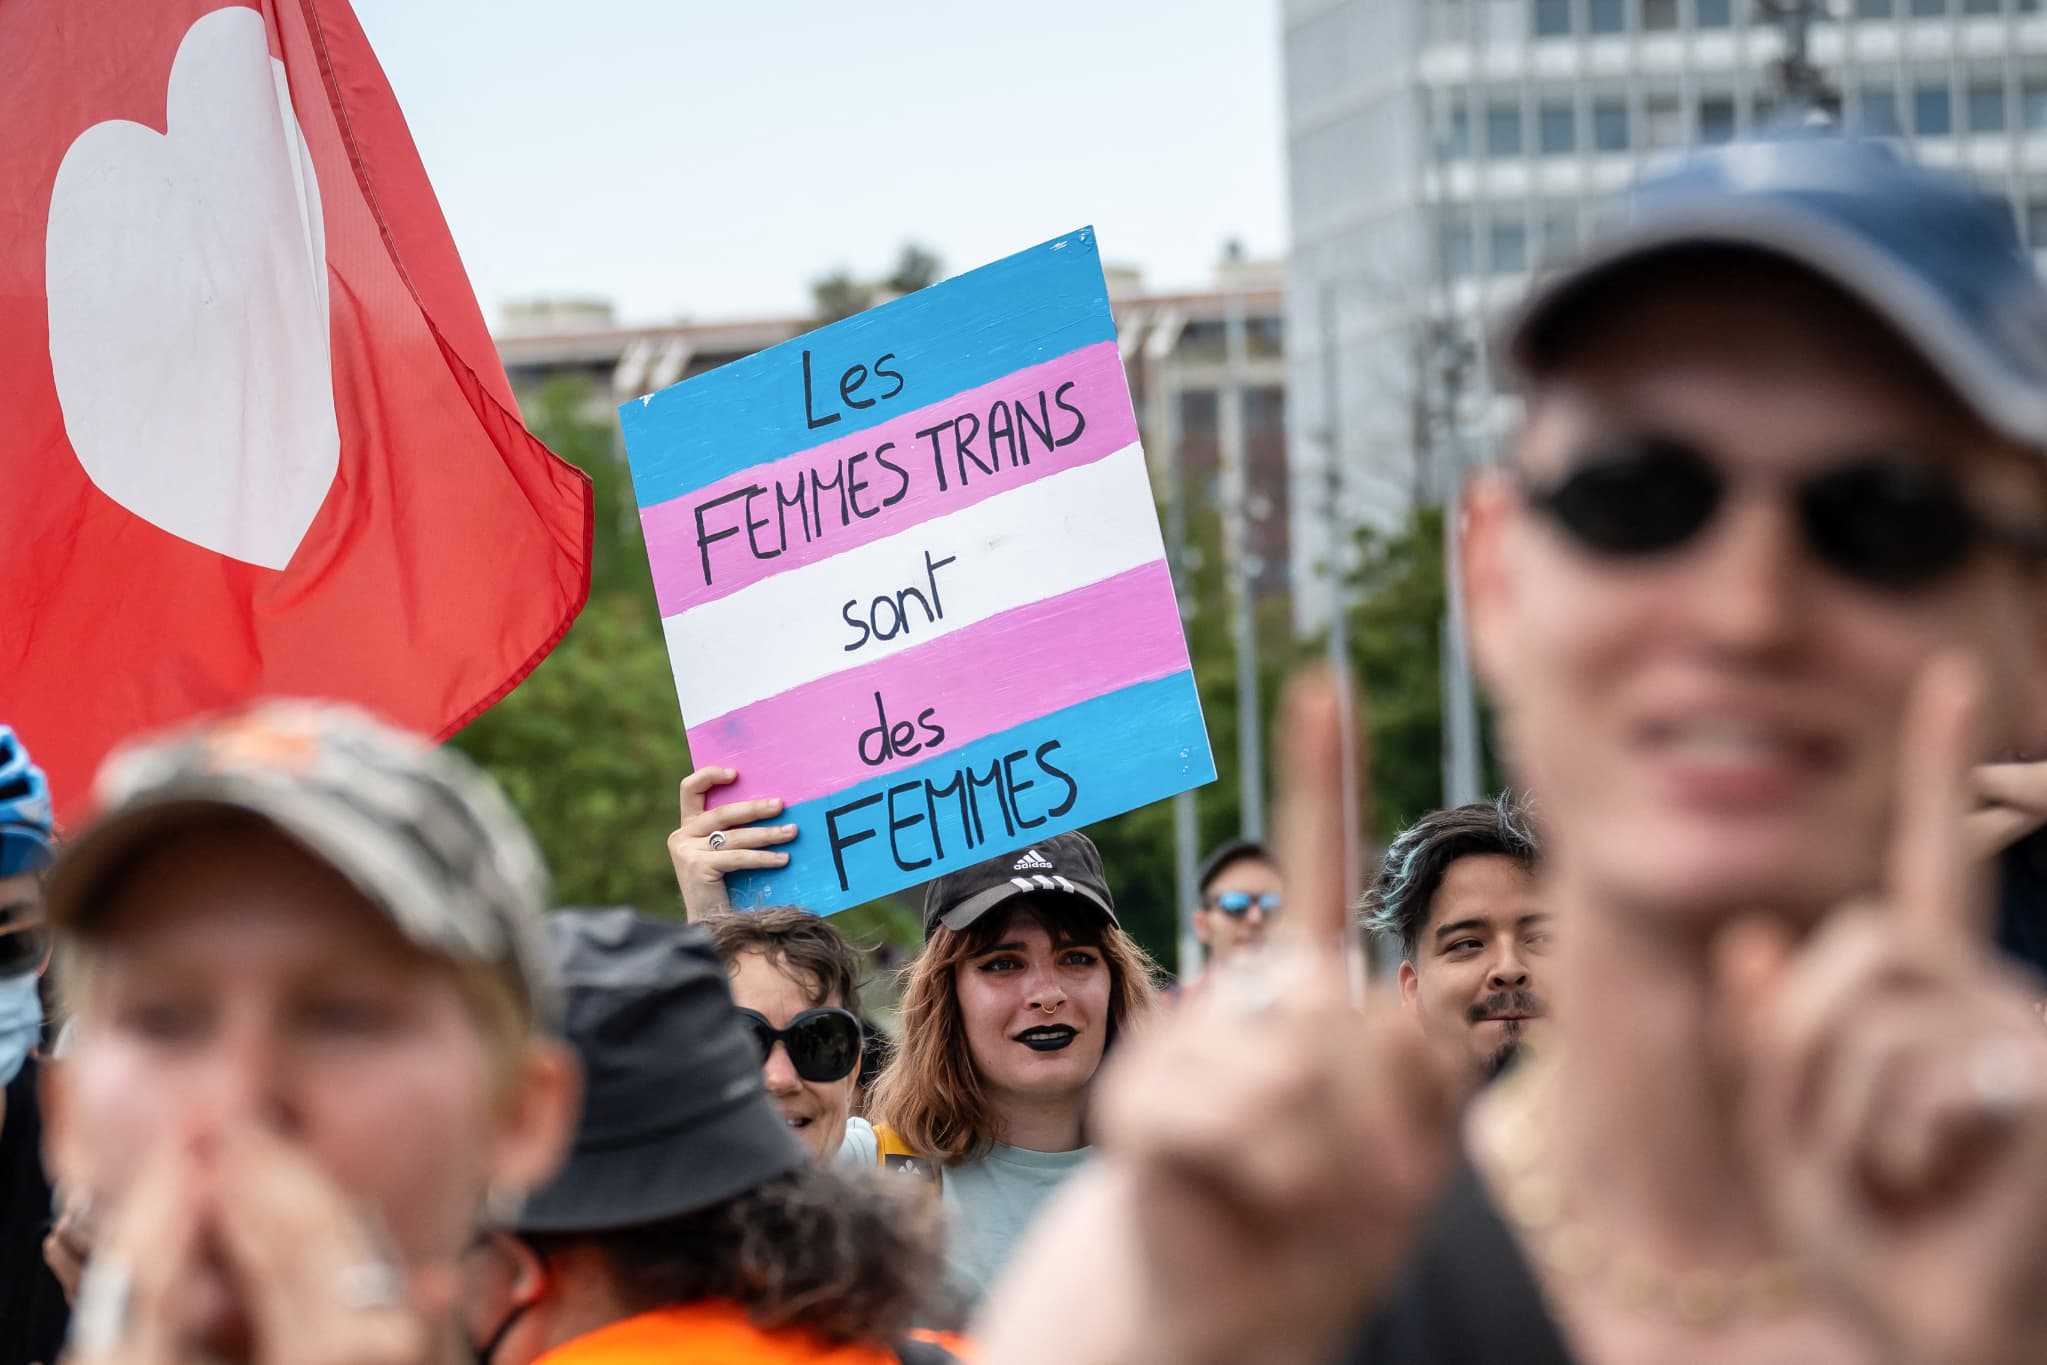 une manifestation contre la transphobie organisée à paris avant une conférence controversée